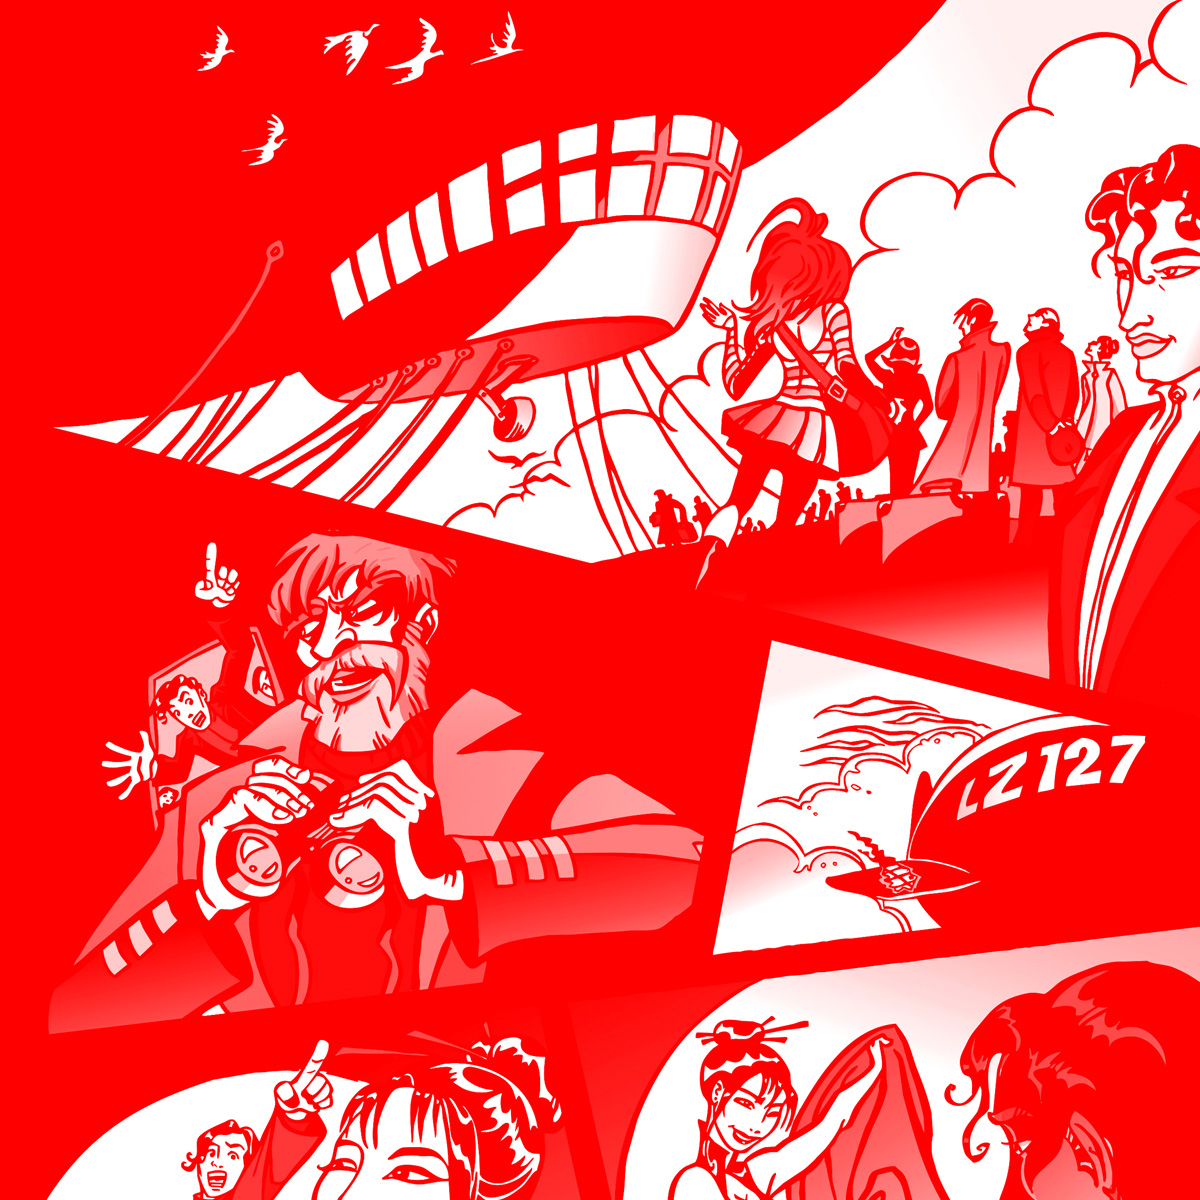 Ausschnitt eines Mangas, dass die Rettung des Luftschiffes LZ127 mittels zusammengenähter Zoeppritz Decken zeigt.